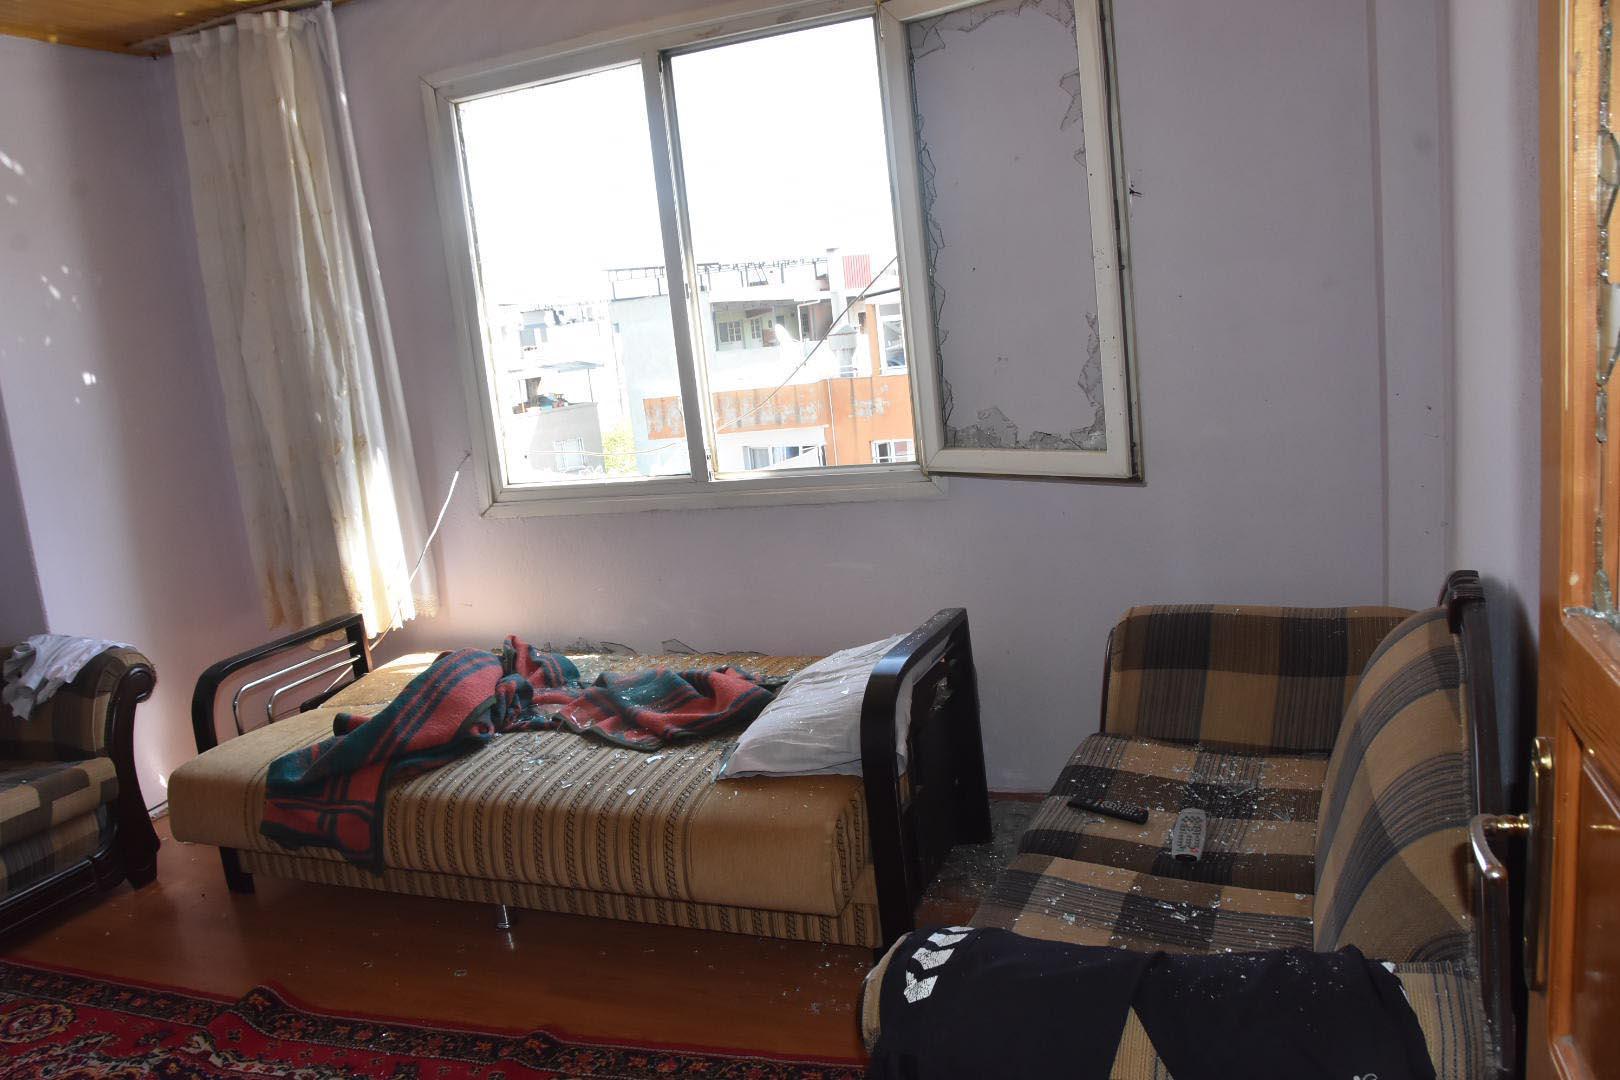 Kiracının savaş alanına çevirdiği evin sahibi: Korkuyoruz